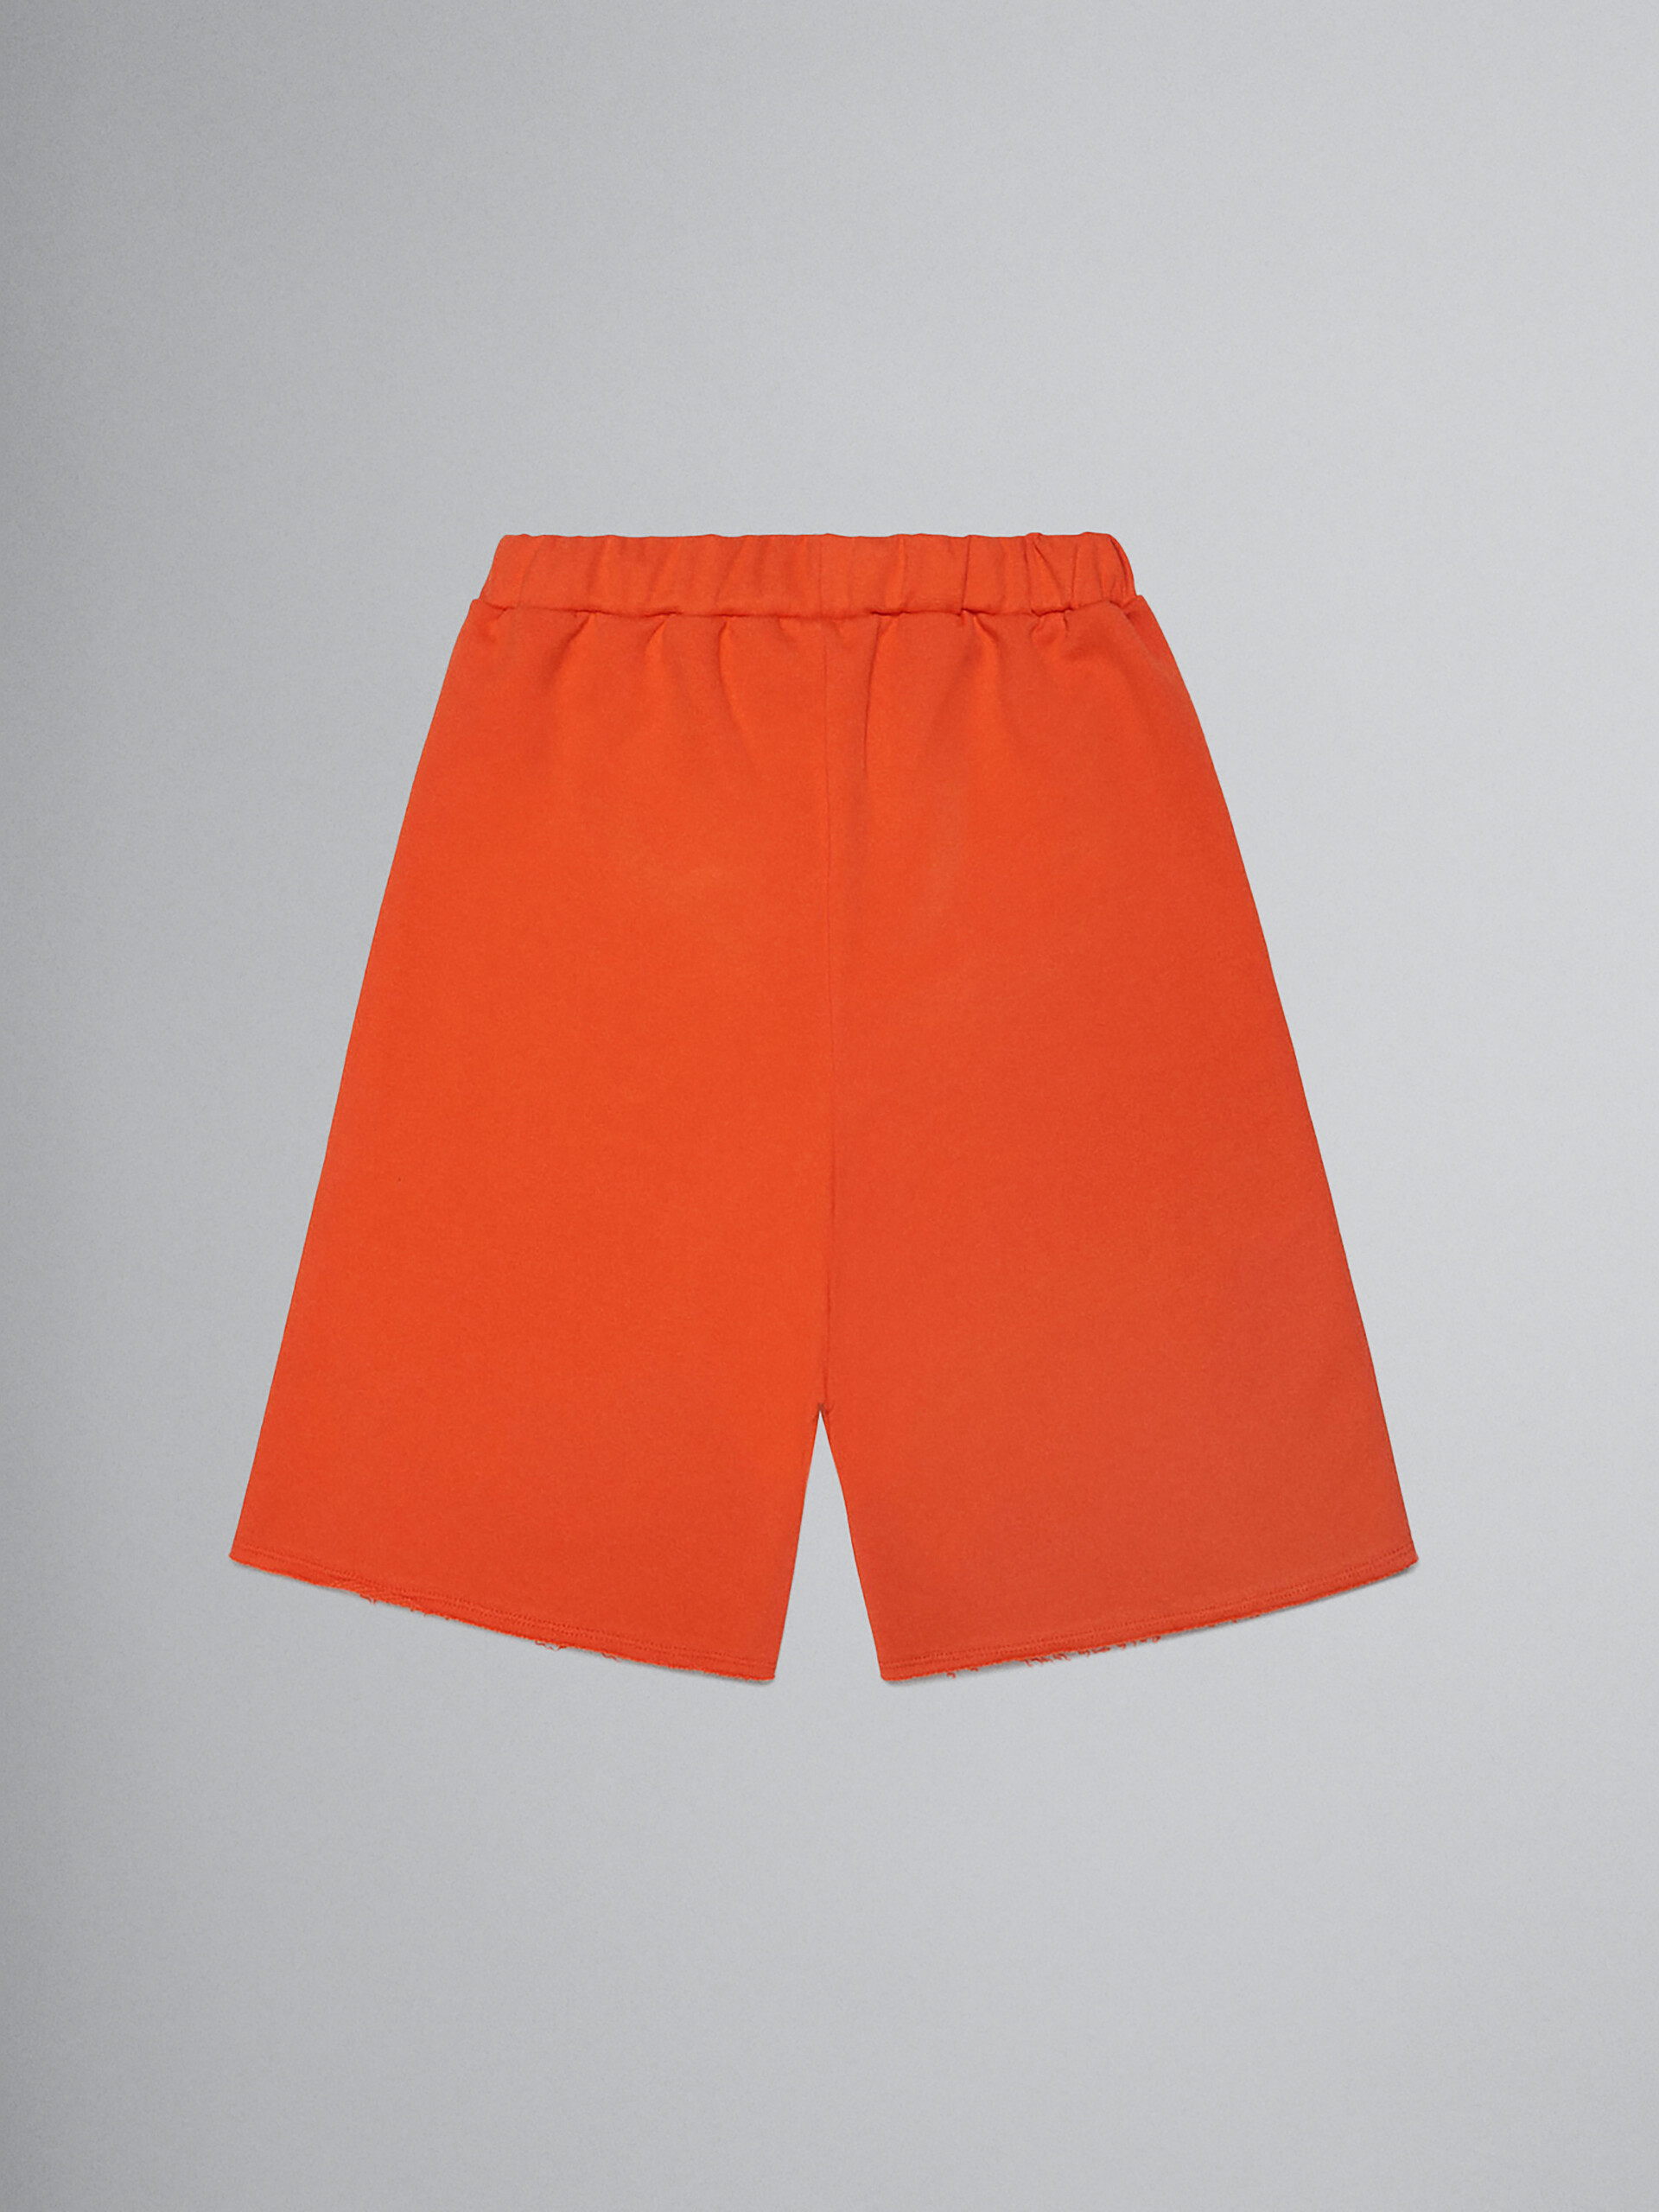 Orange fleece shorts with Brush logo - Pants - Image 2